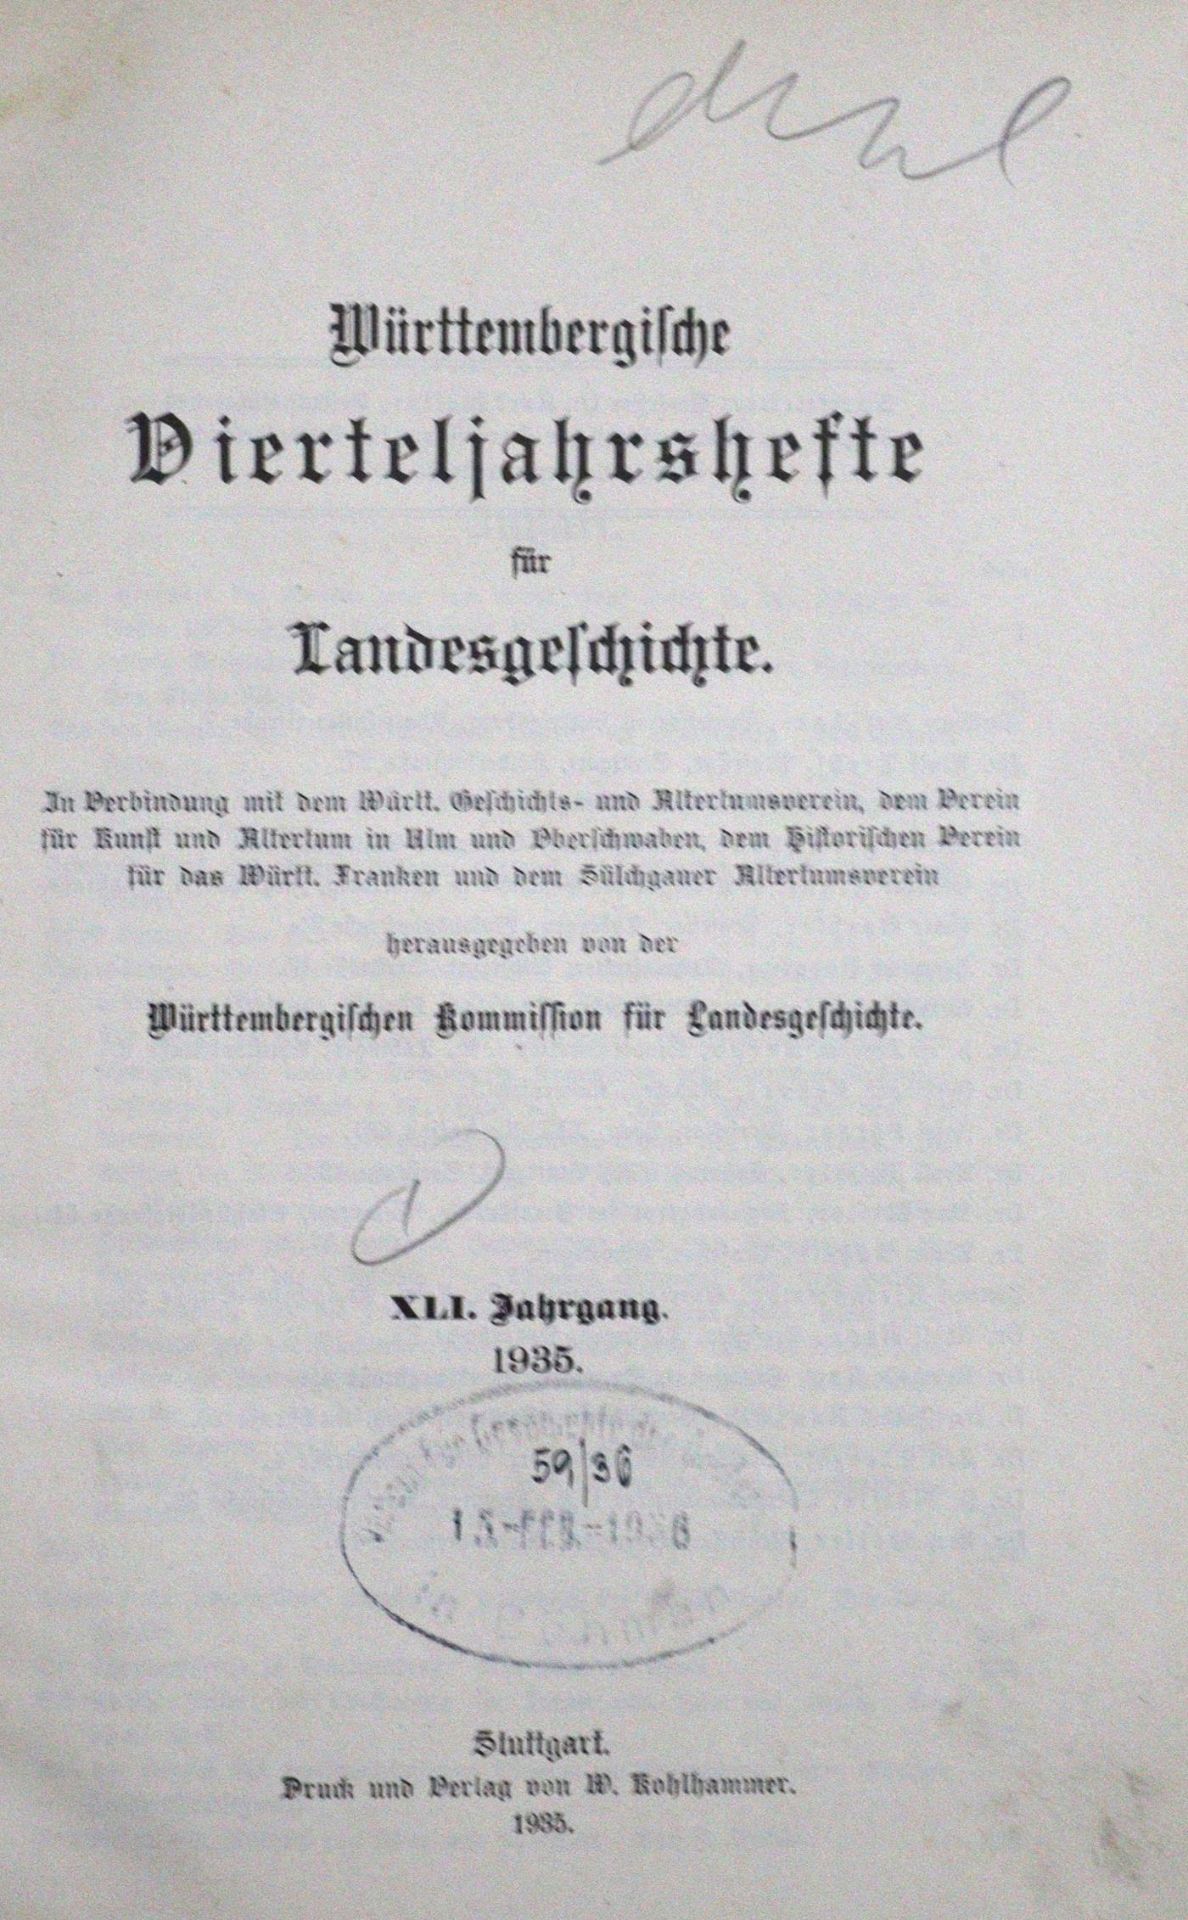 Württembergische Vierteljahreshefte - Image 2 of 2